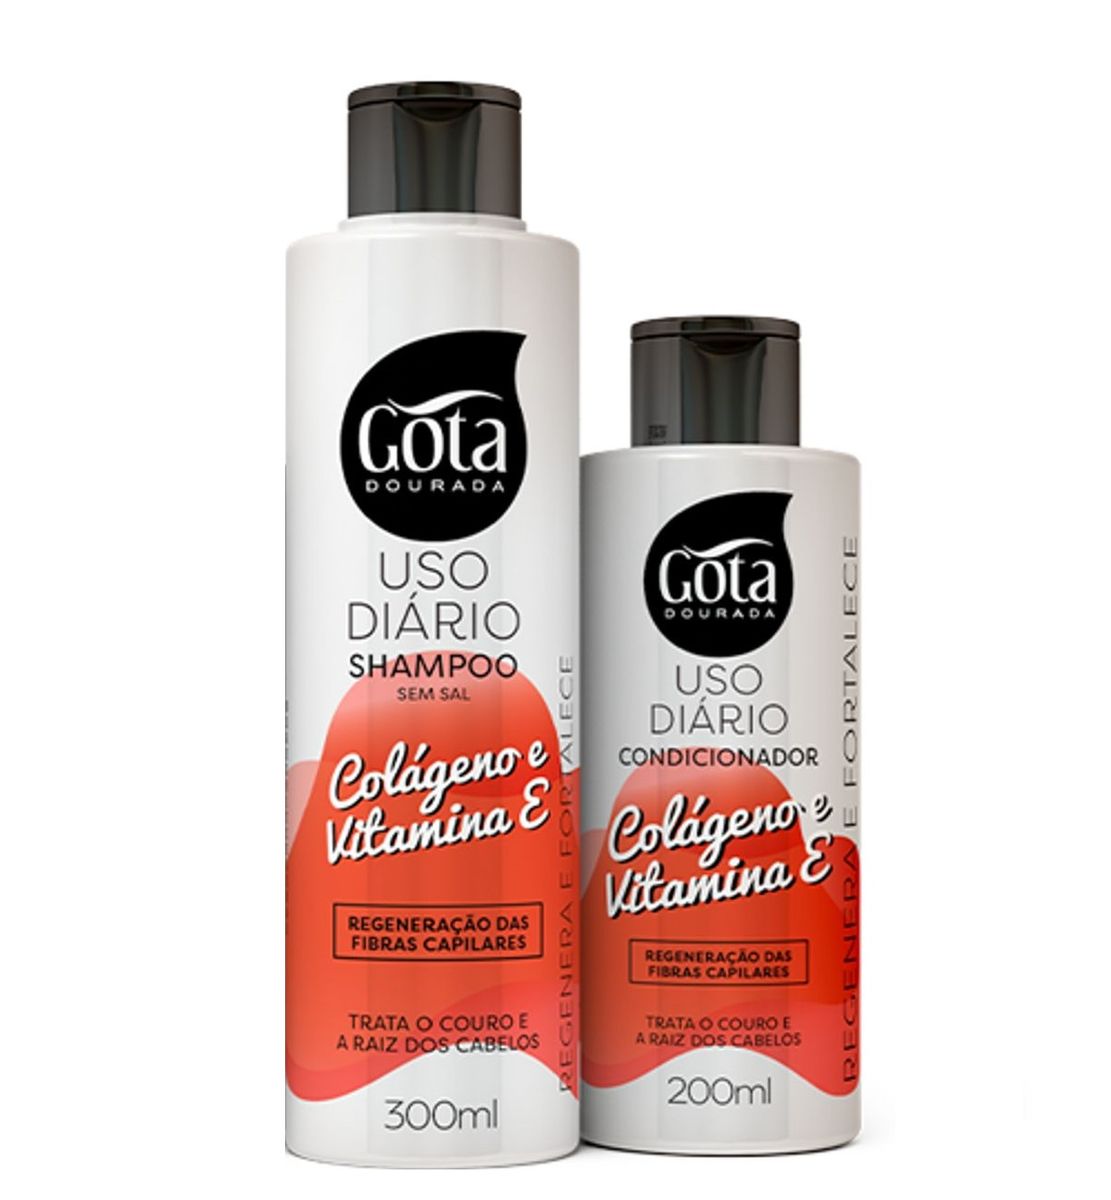 Shampoo+Condicionador Gota Dourada Colágeno Vitamina E